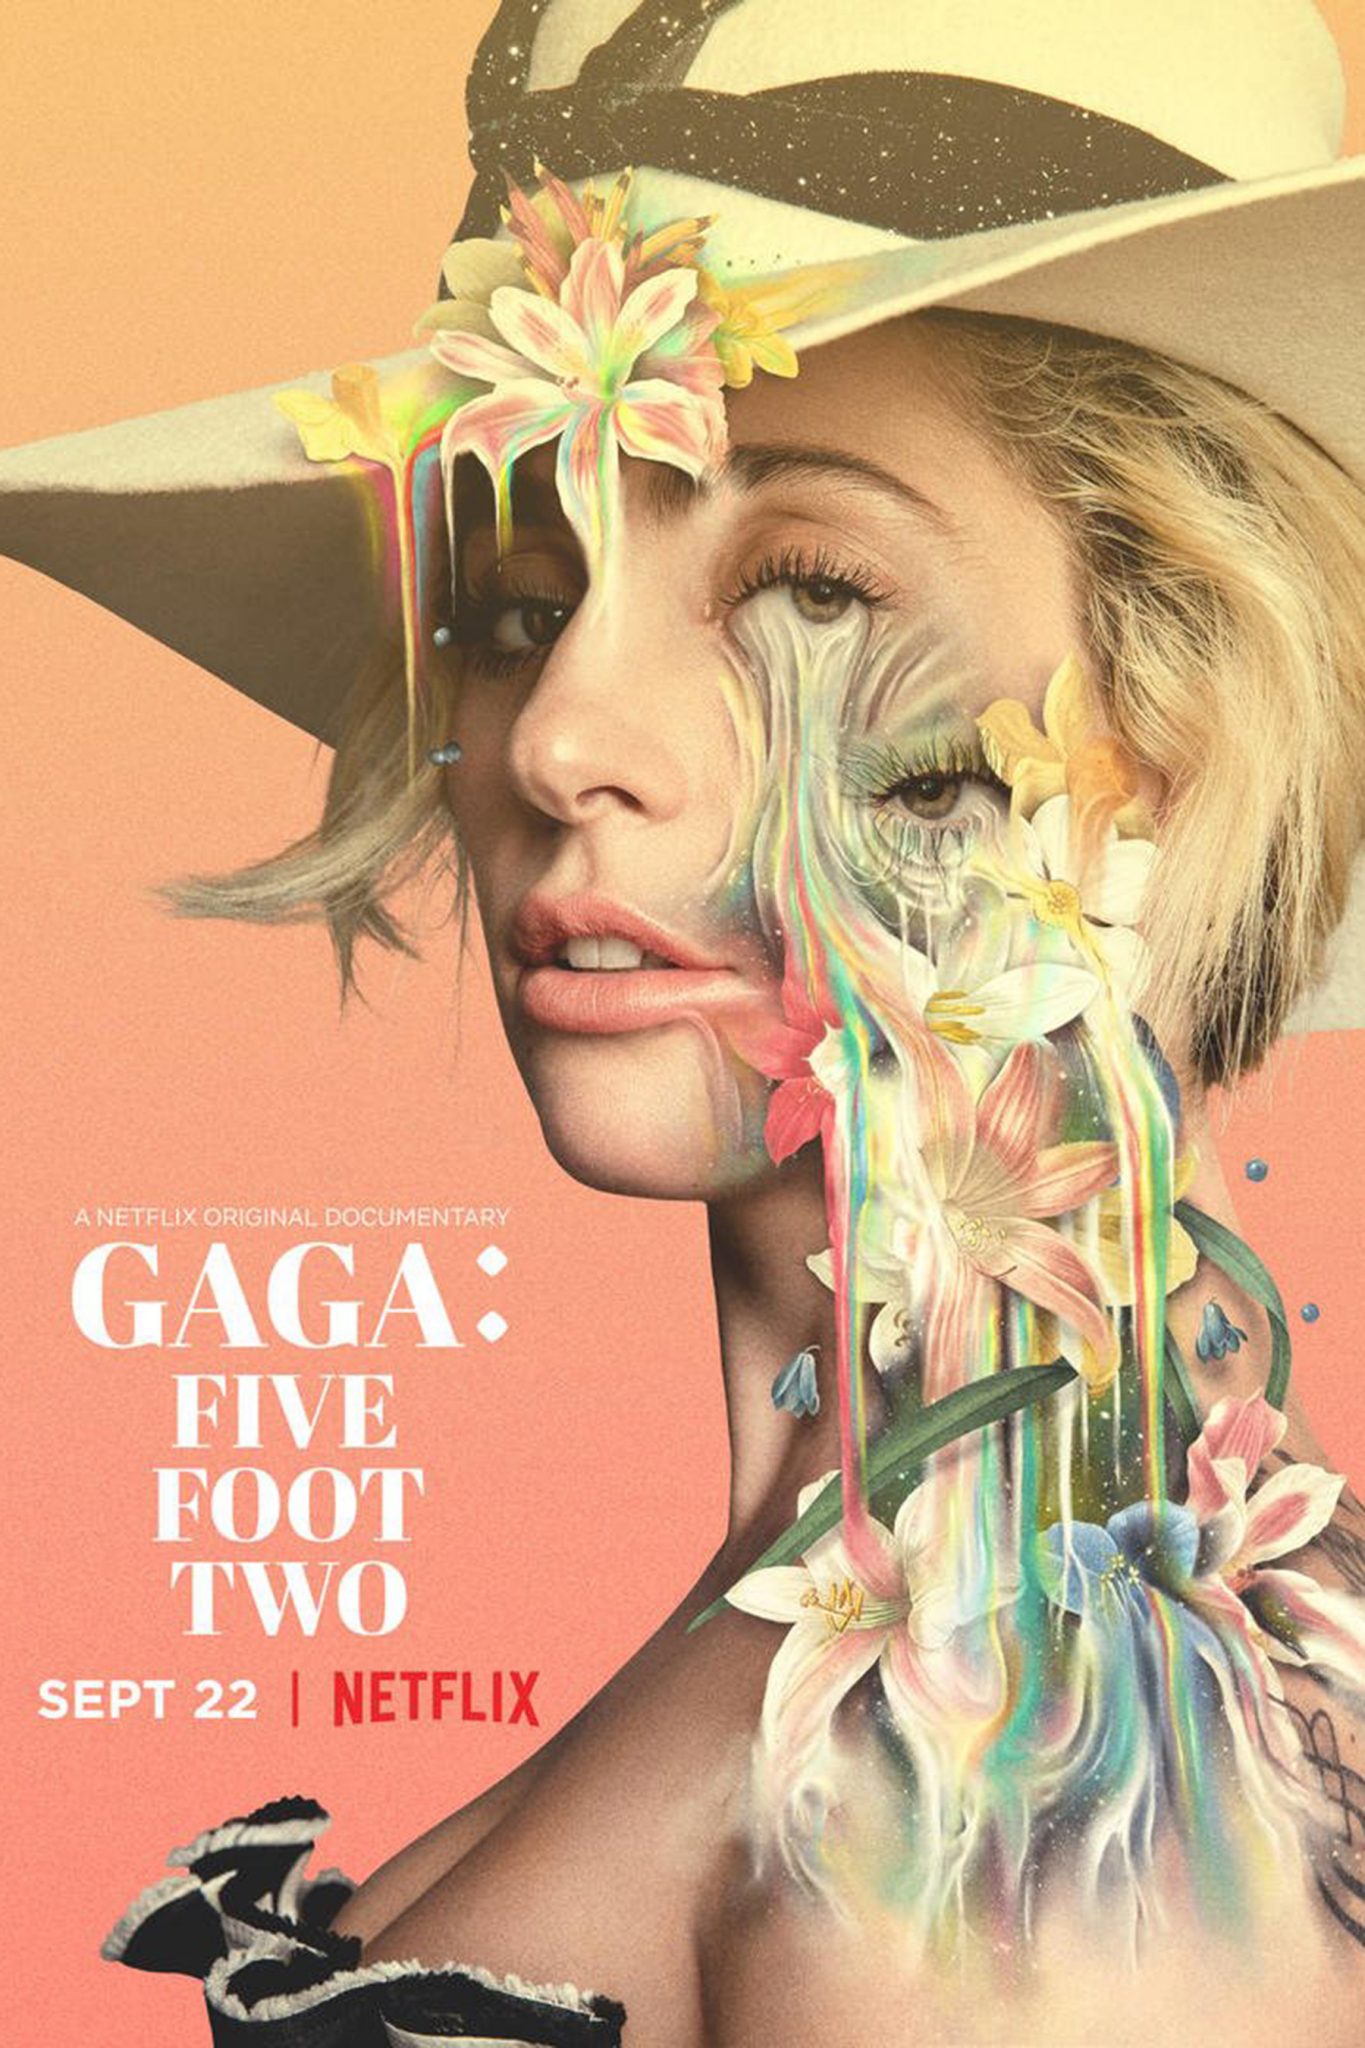 Netflix Libera Trailer do Documentário Sobre a Diva do Pop Lady Gaga 5